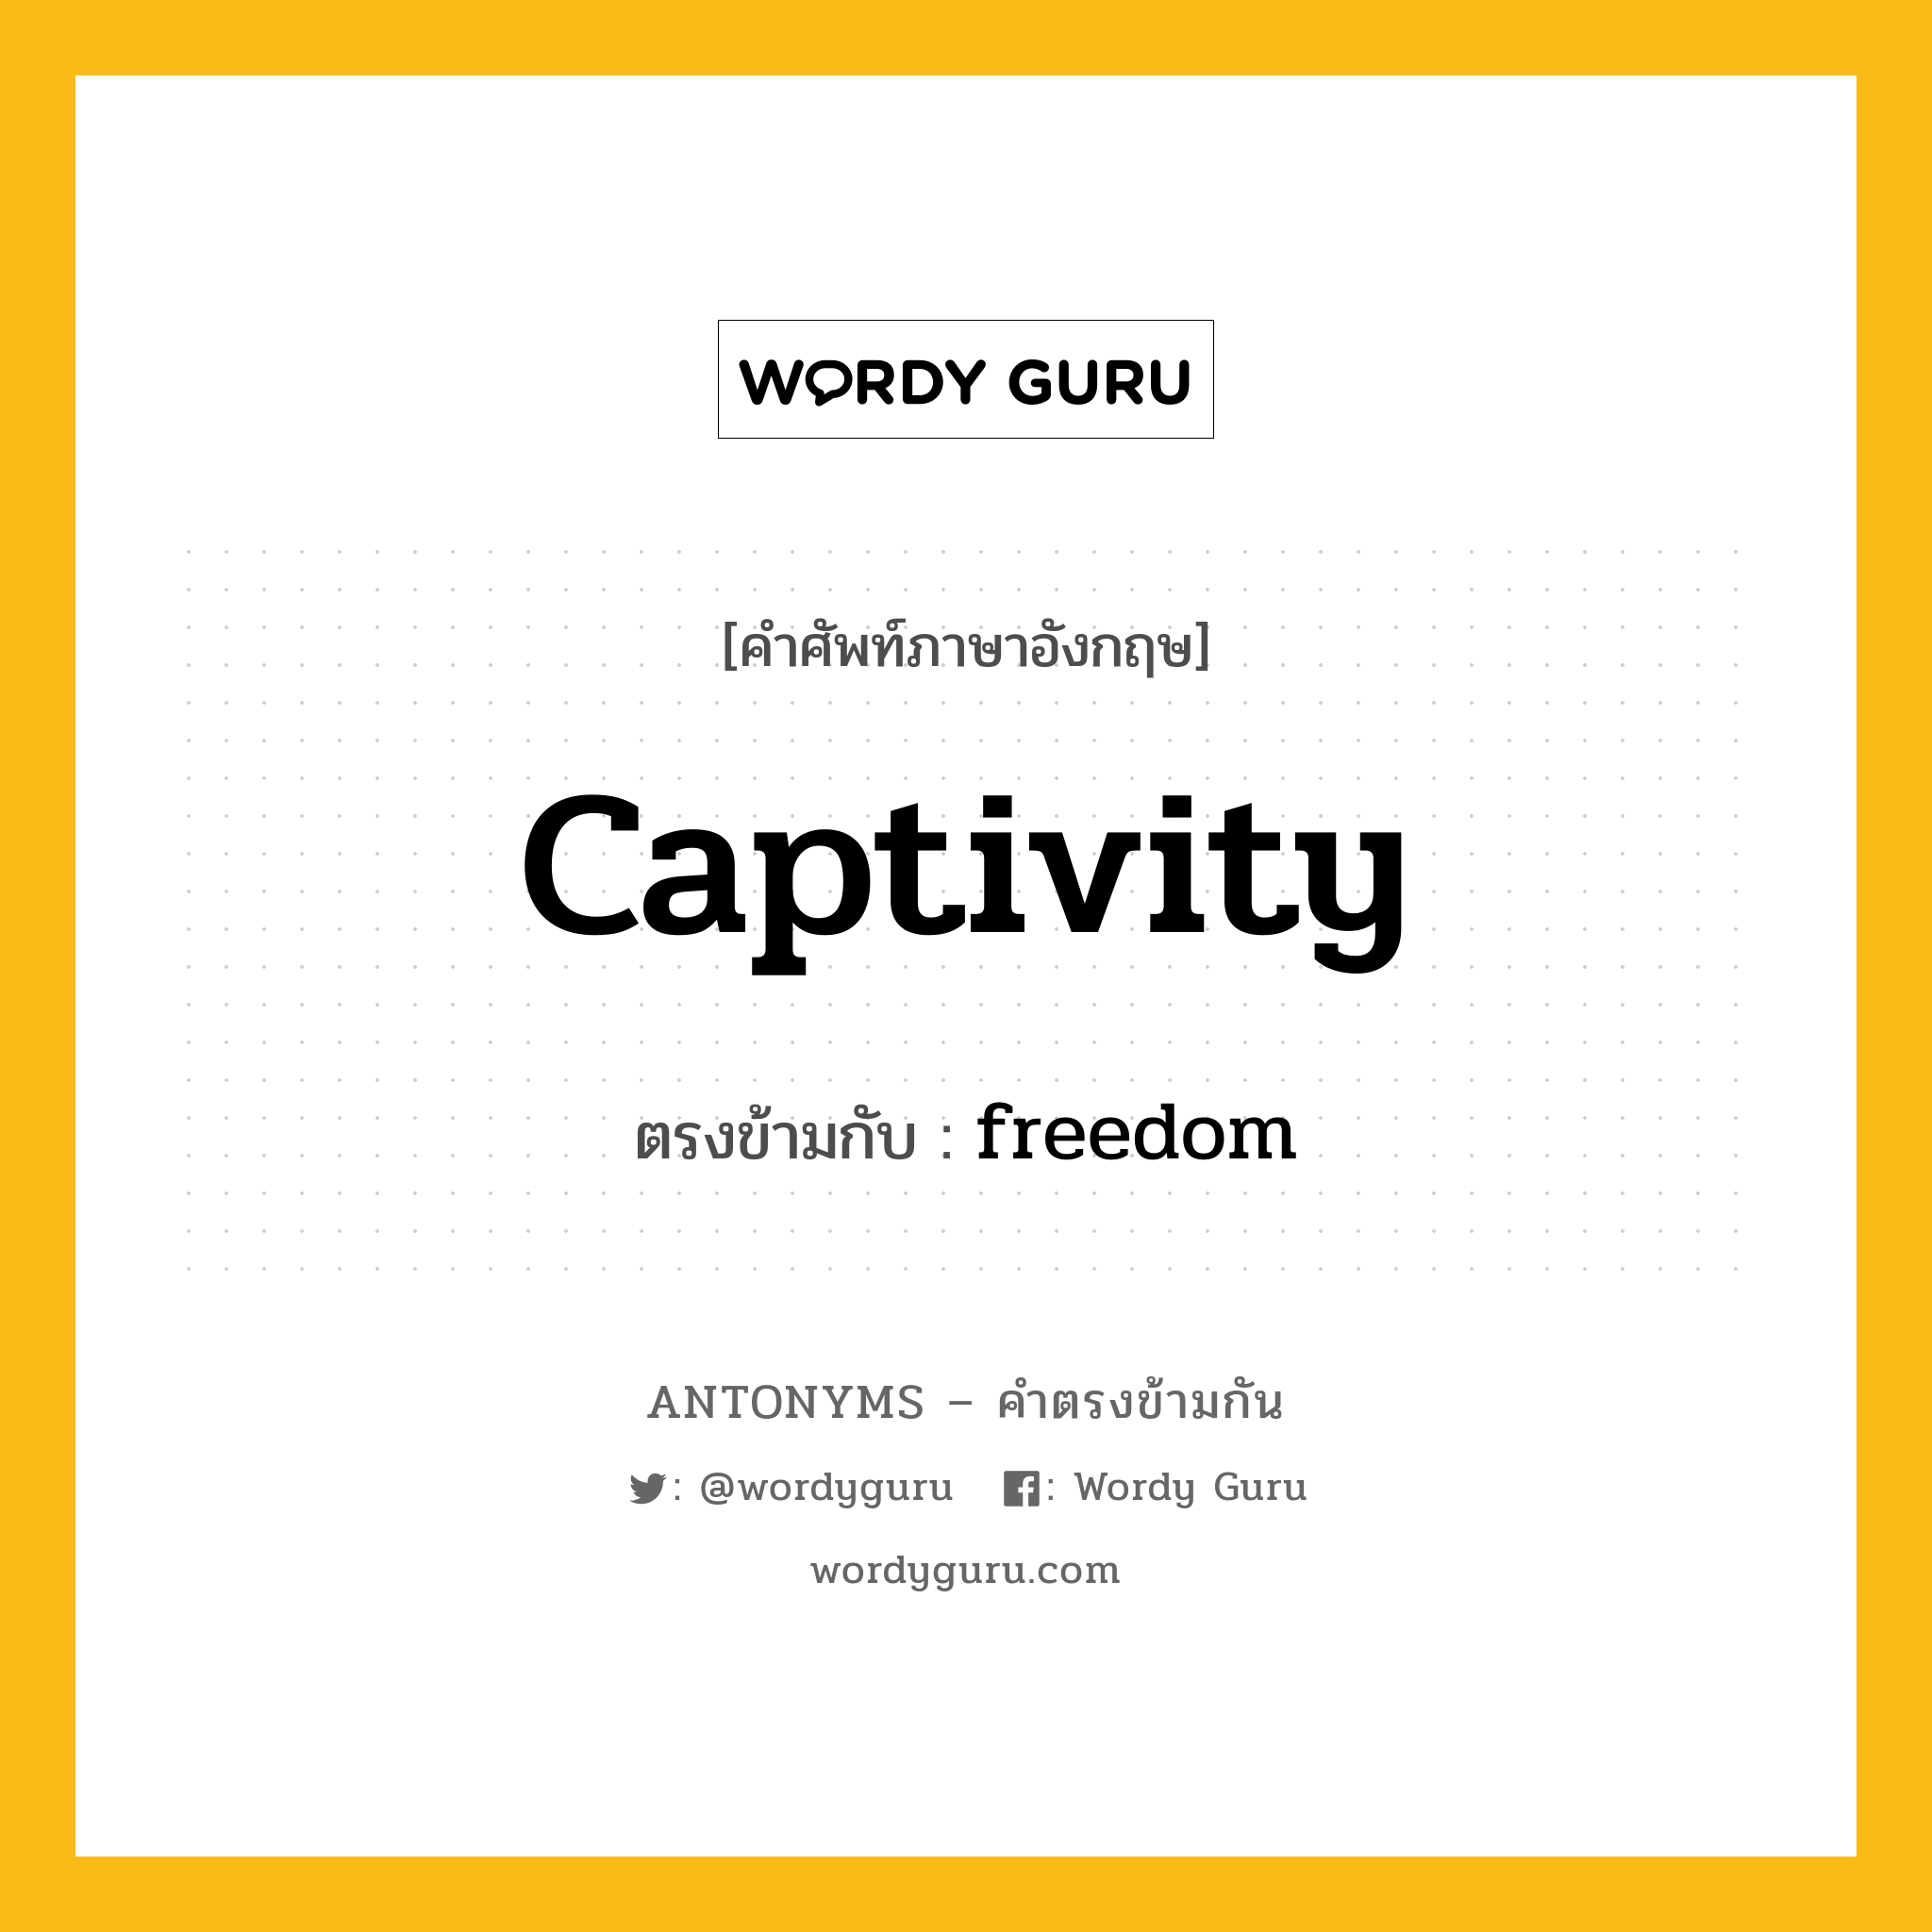 captivity เป็นคำตรงข้ามกับคำไหนบ้าง?, คำศัพท์ภาษาอังกฤษ captivity ตรงข้ามกับ freedom หมวด freedom